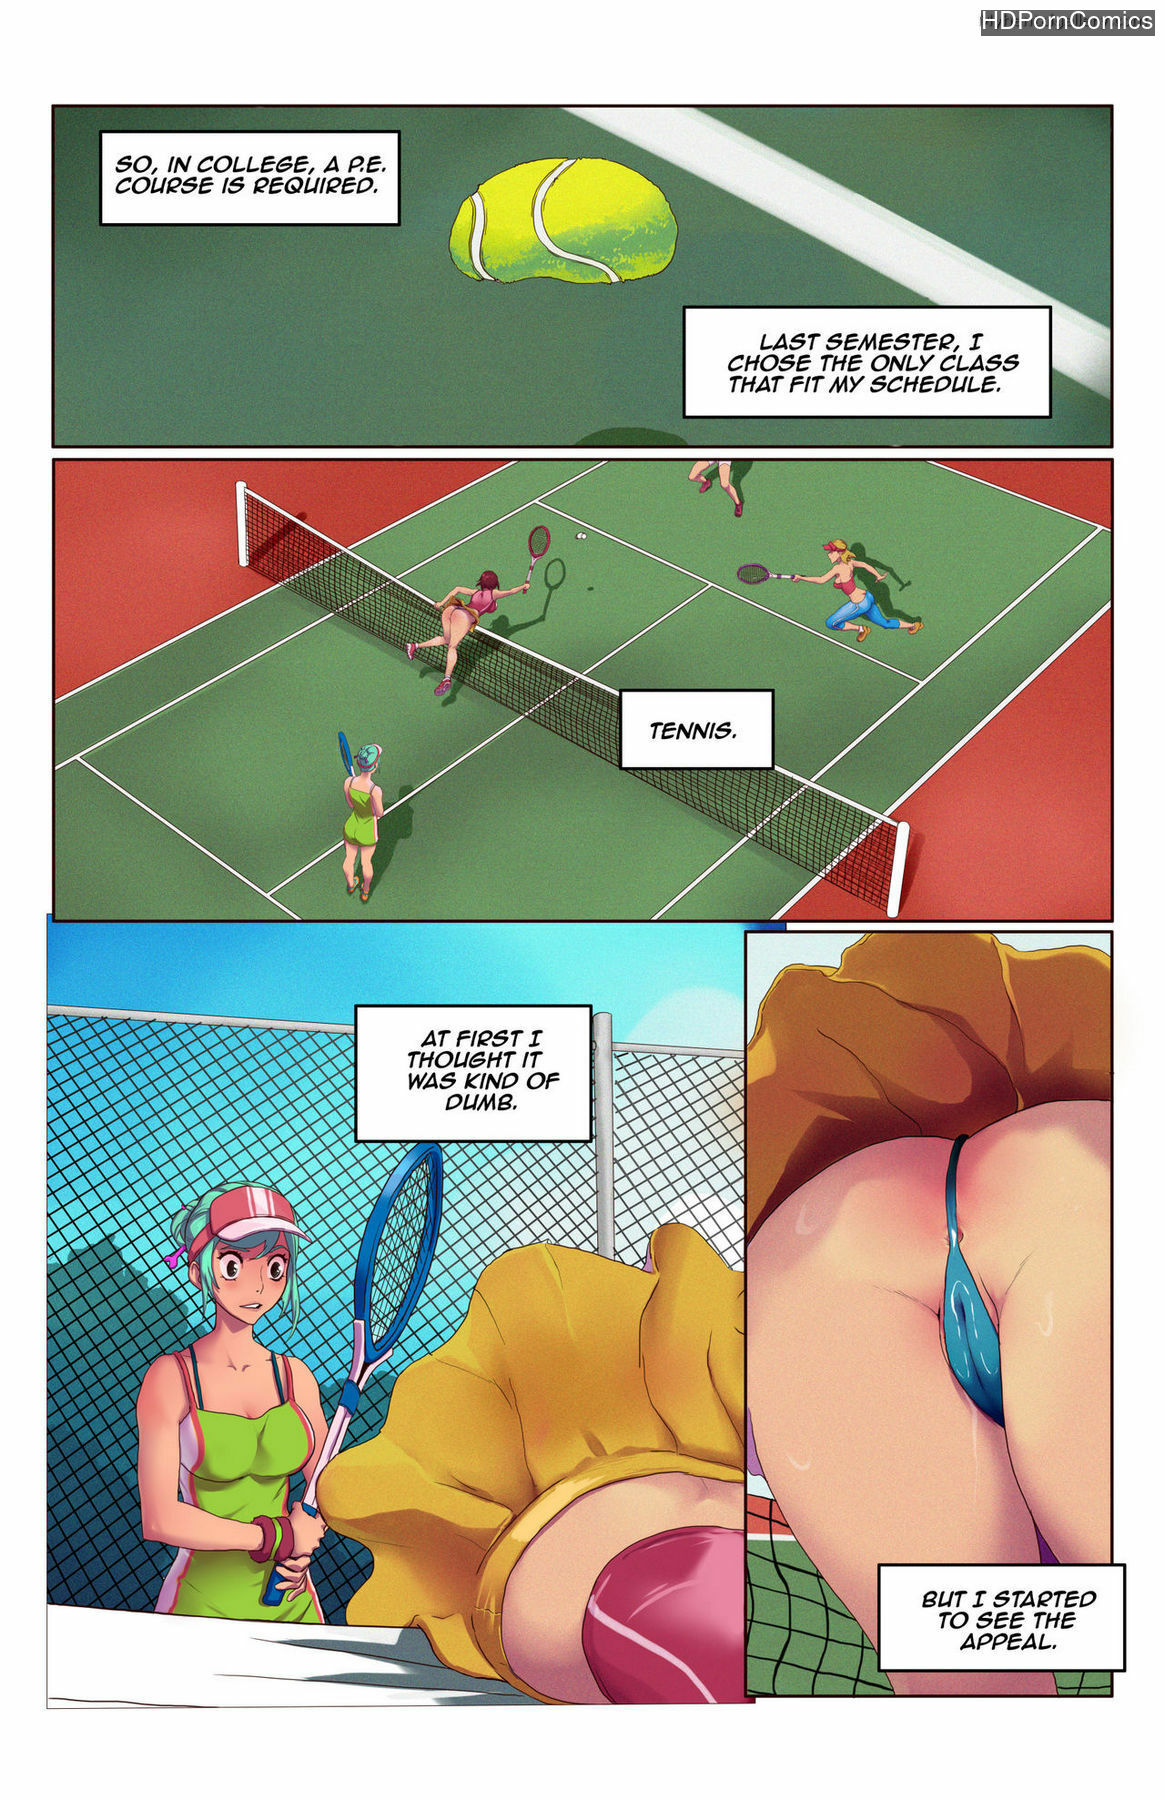 Tennis Cartoon Porn - Time Stop And Bop - Tennis comic porn - HD Porn Comics